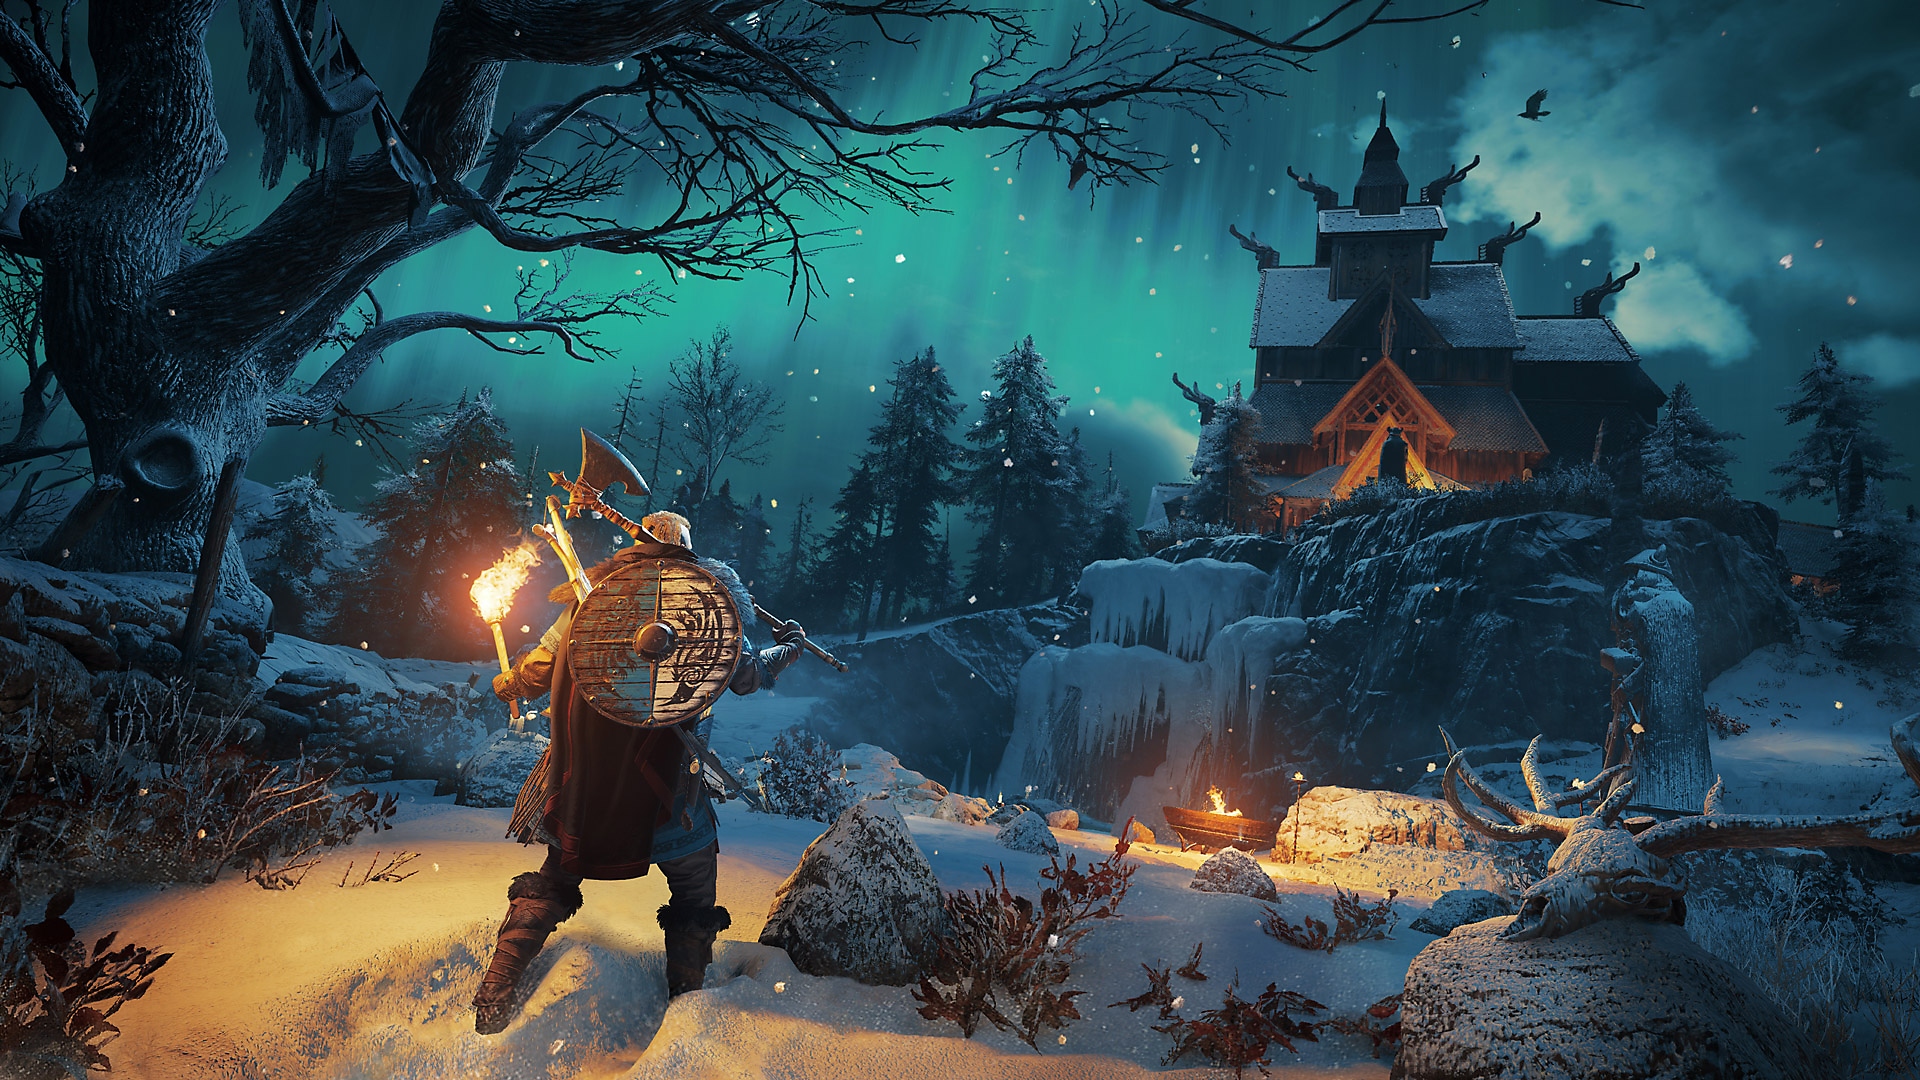 Captura de pantalla de Assassin's Creed Valhalla que muestra al personaje principal sujetando un hacha sobre el hombro mirando auroras boreales en el cielo